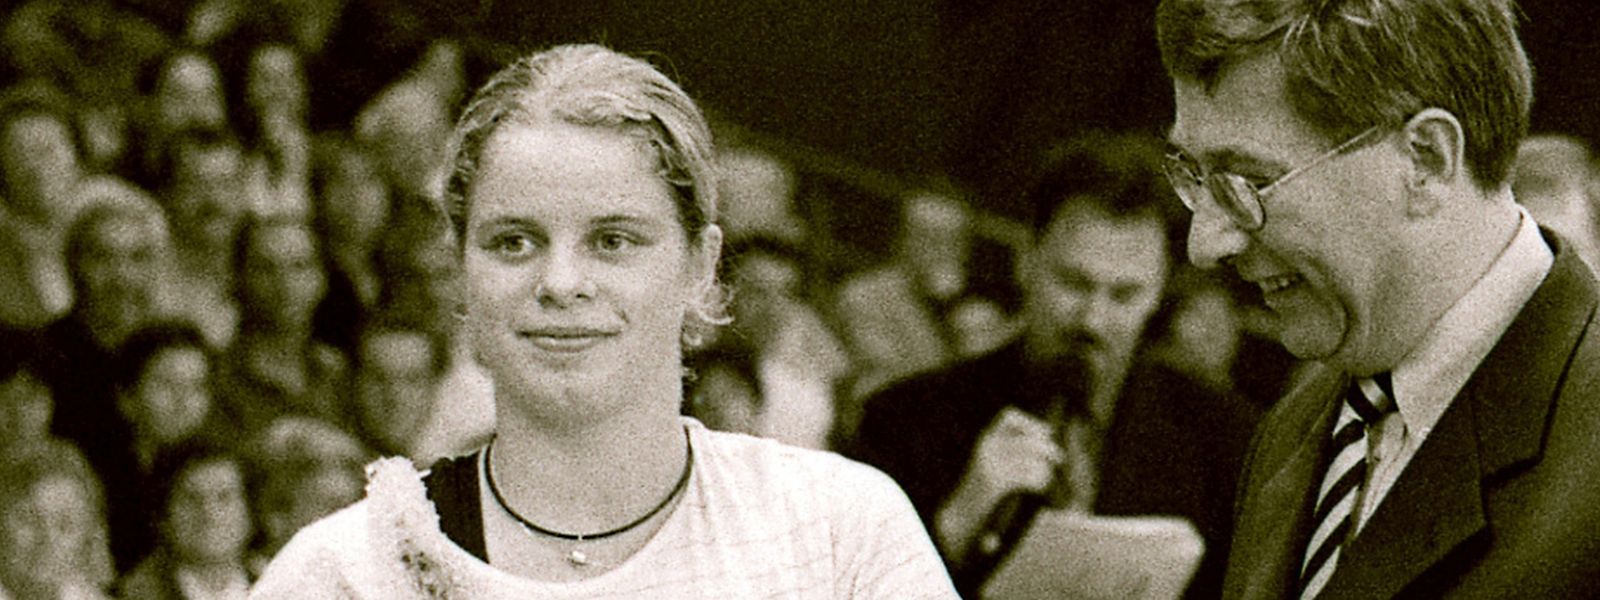 Kim Clijsters gewann 1999 in Luxemburg ihr erstes WTA-Turnier.